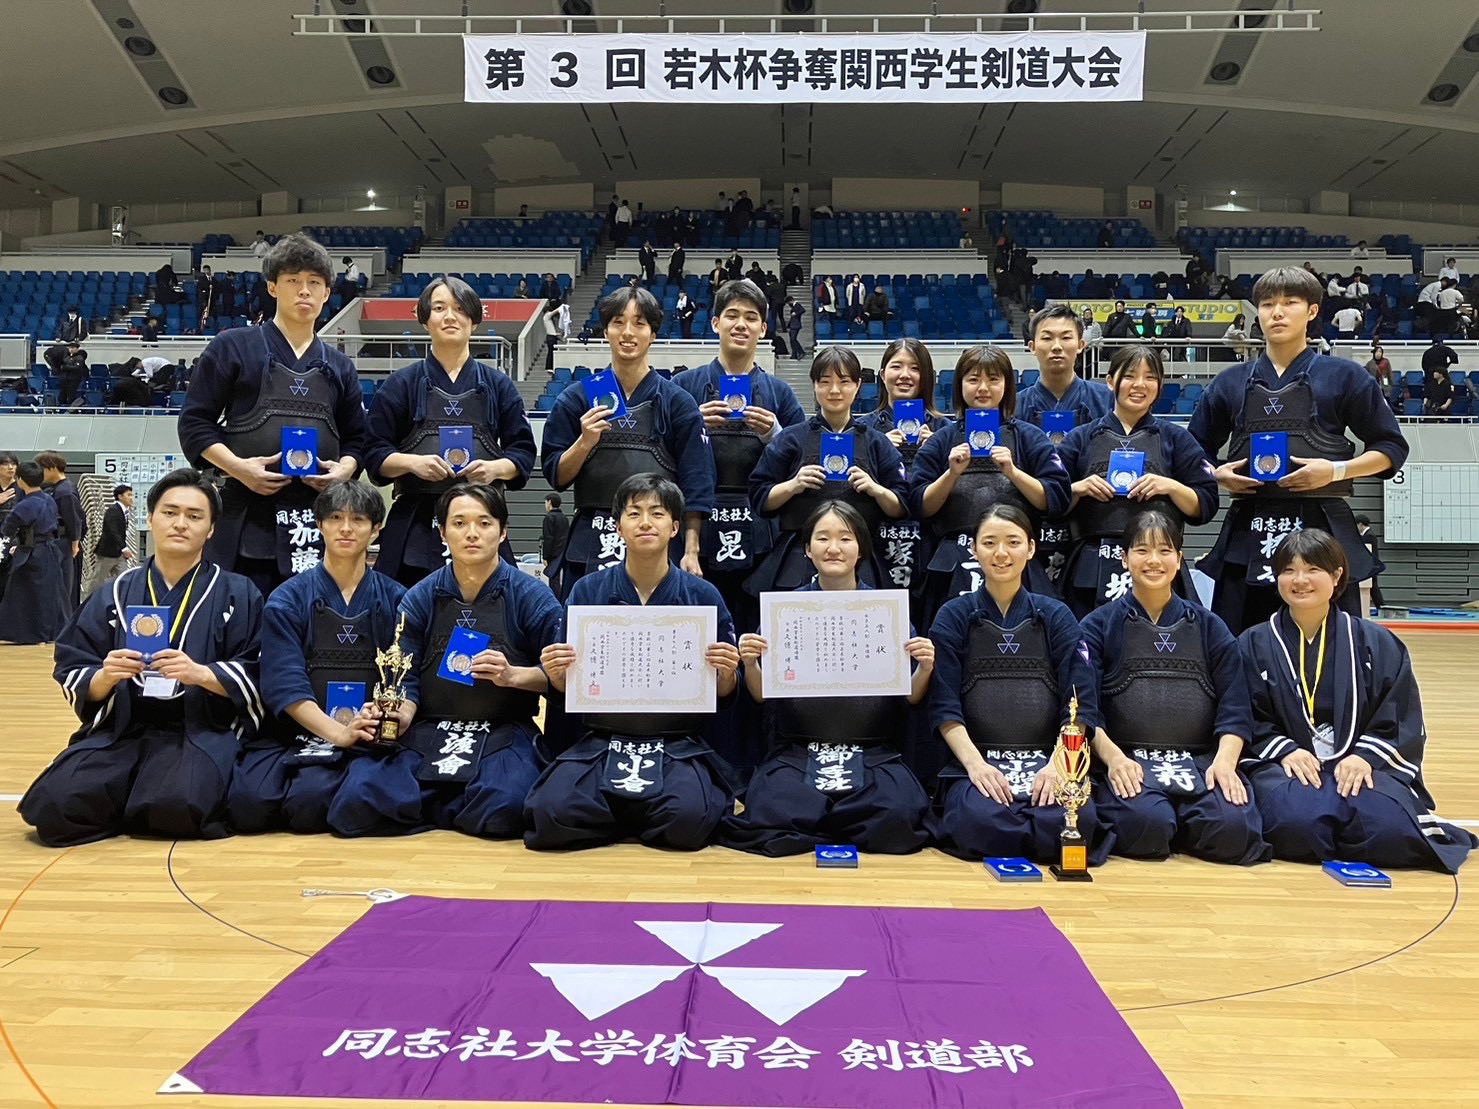 【結果報告】第3回若木杯争奪関西学生剣道大会